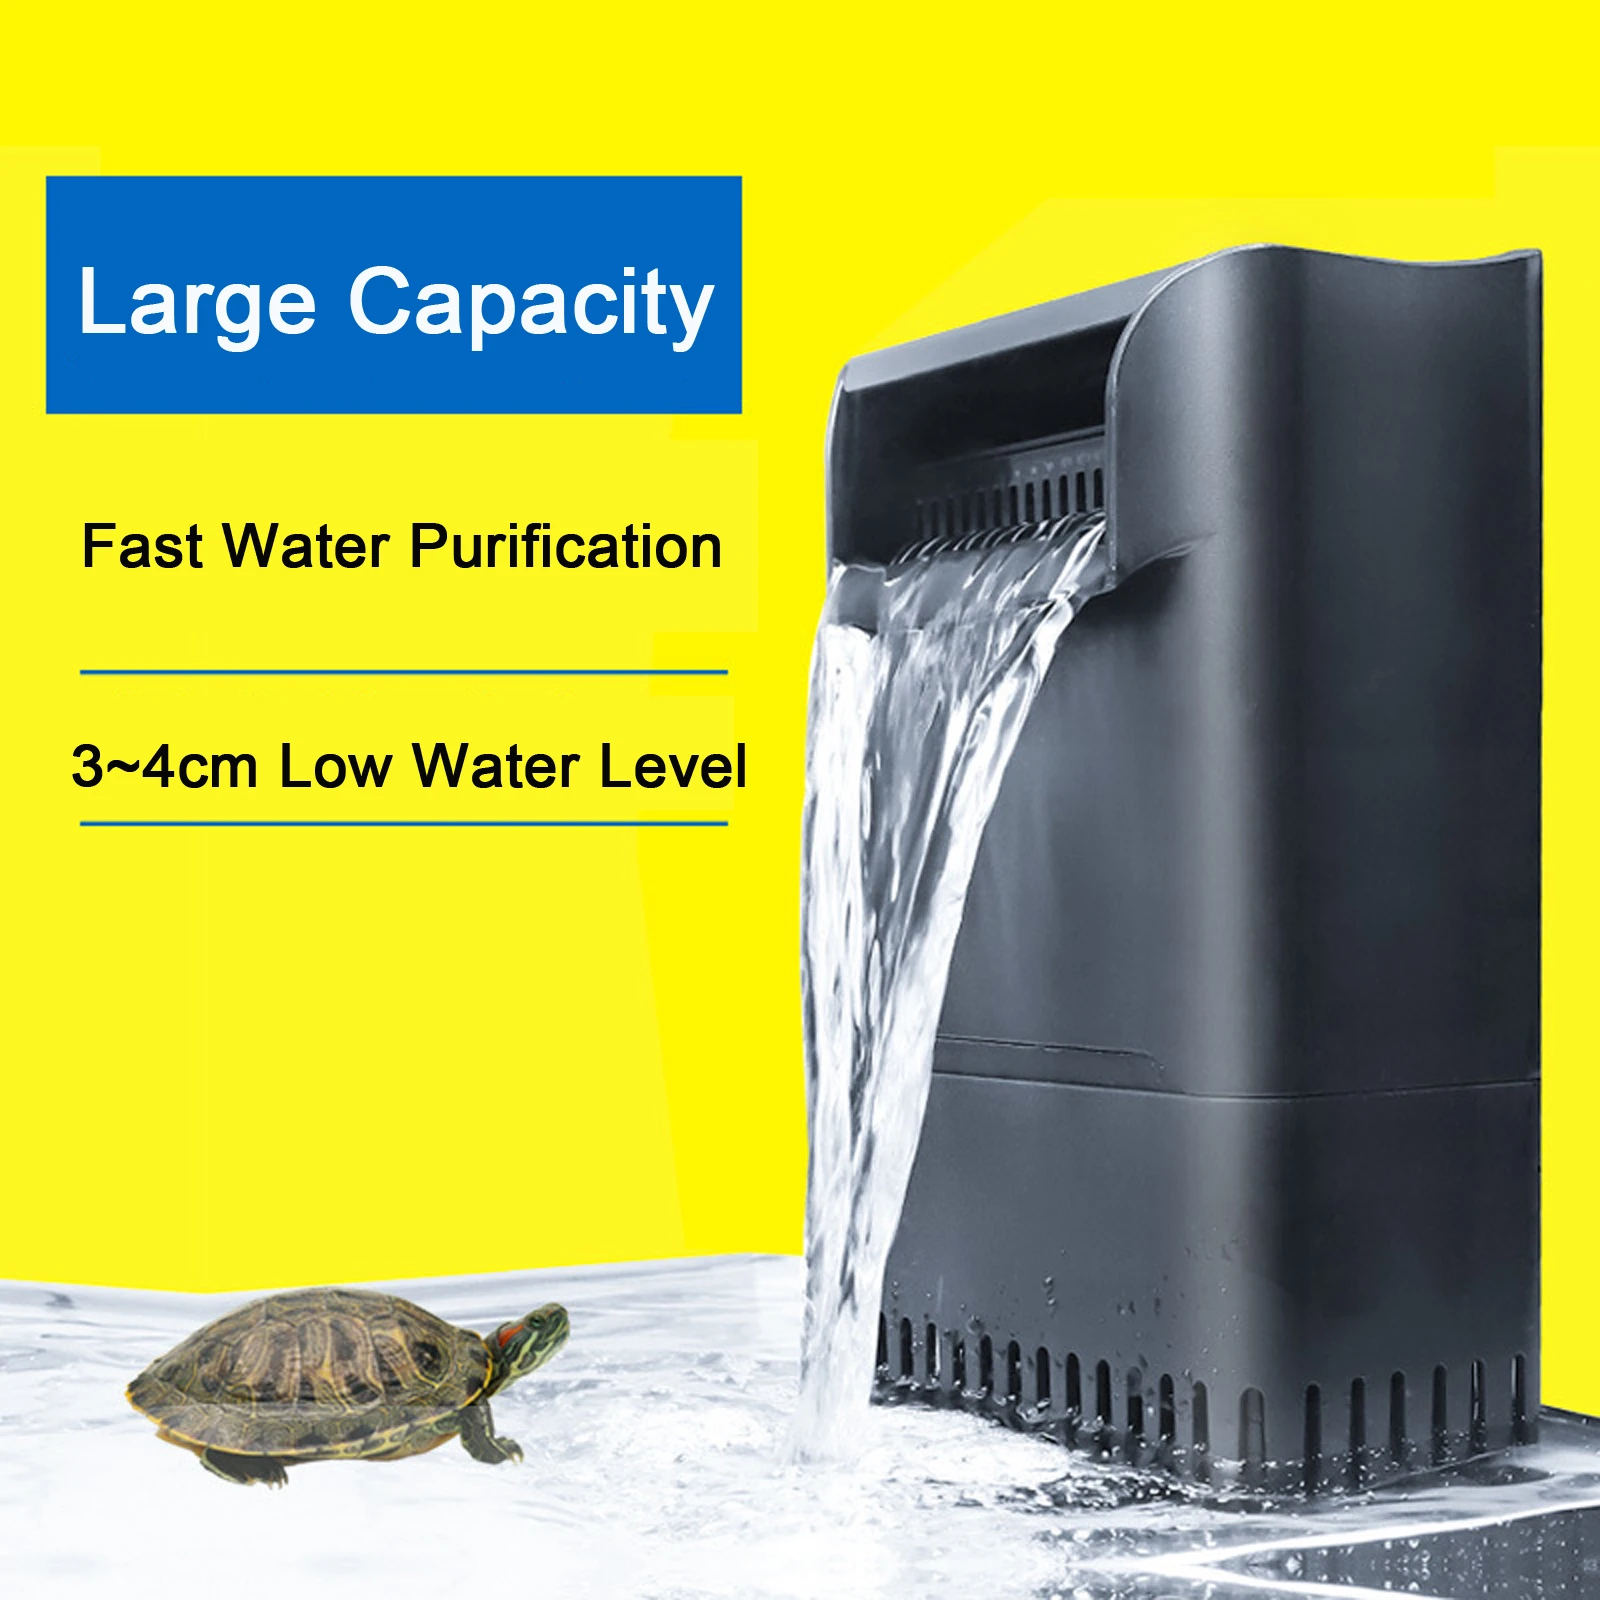 Capaciteit Lage Waterstand Schildpad Filter Pomp 900L/H Waterval Aquarium Aquarium Filter Voor Reptiel Vis Water circulatie|Filters & Accessoires| - AliExpress